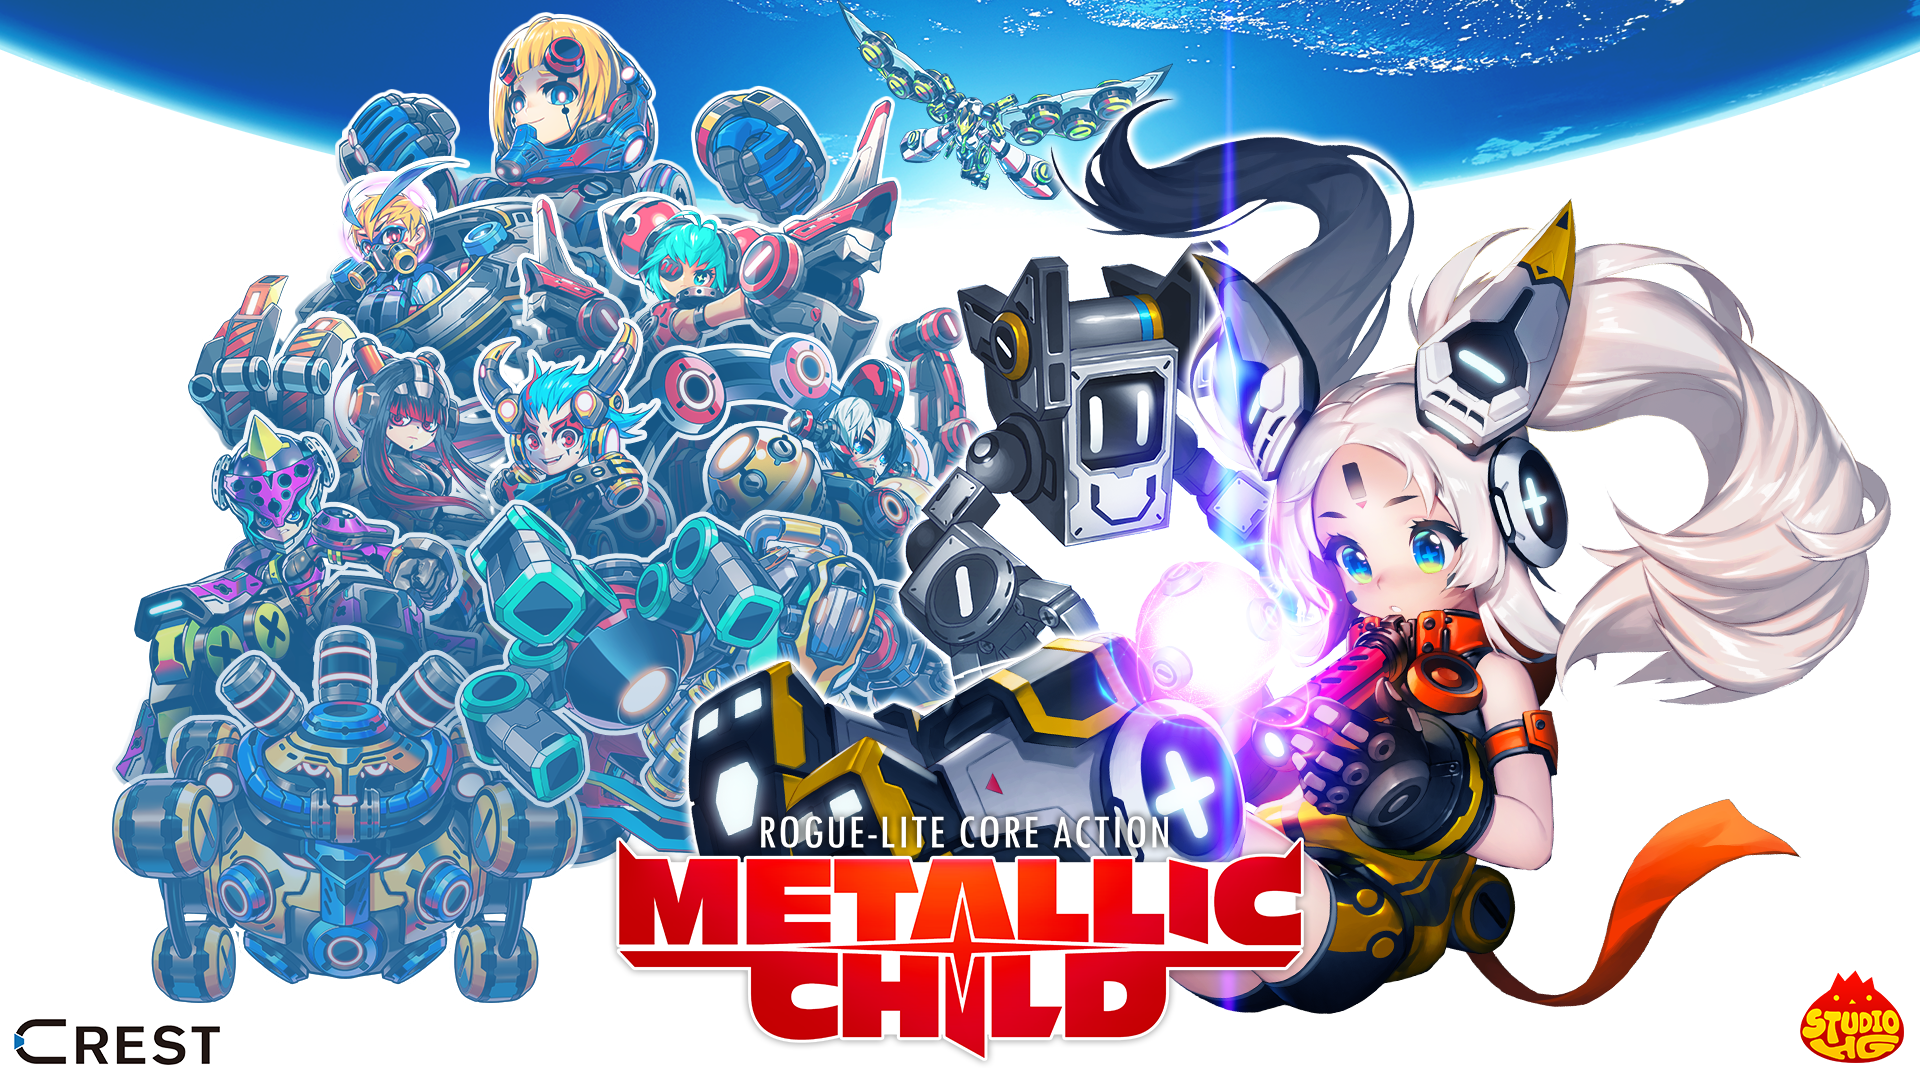 METALLIC CHILD』 新規映像を任天堂「Indie World 2021.4.15」にて公開 